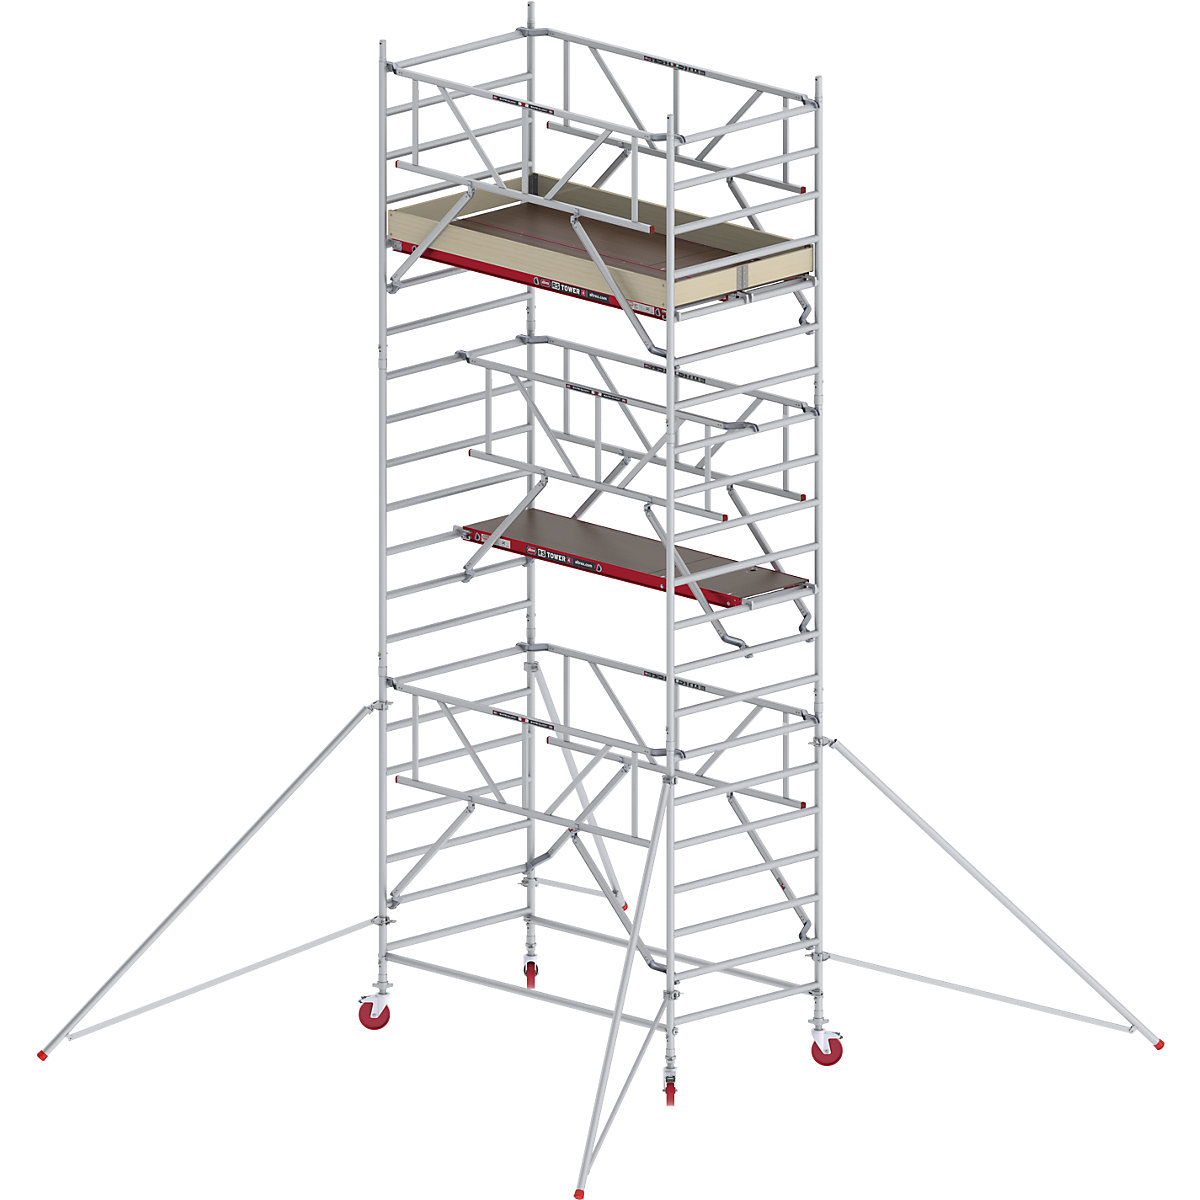 Altrex Fahrgerüst RS TOWER 42 breit mit Safe-Quick®, Holzplattform, Länge 1,85 m, Arbeitshöhe 7,20 m